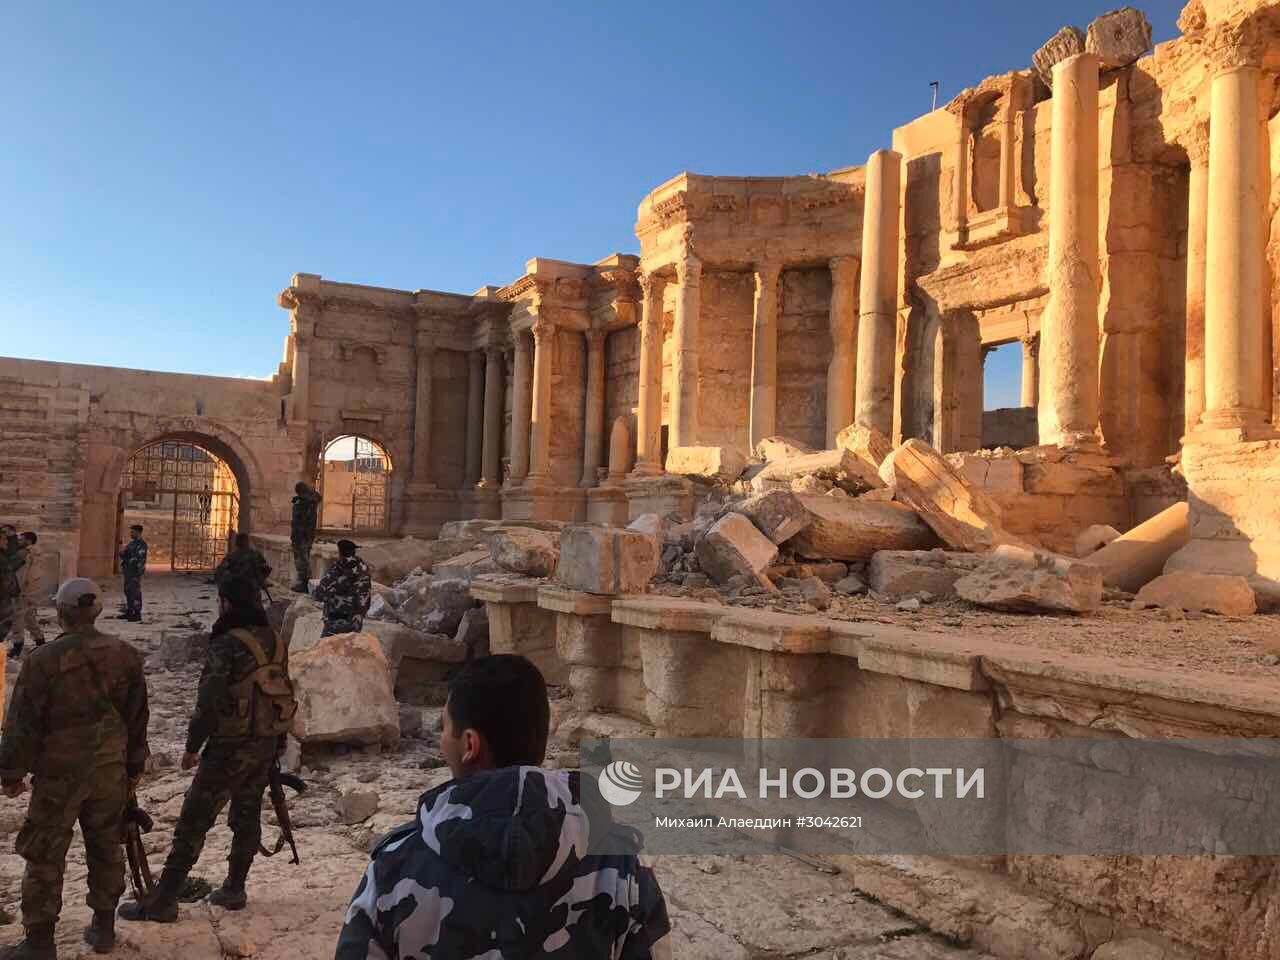 Пальмира при поддержке ВКС РФ была взята войсками Сирийской Арабской Республики